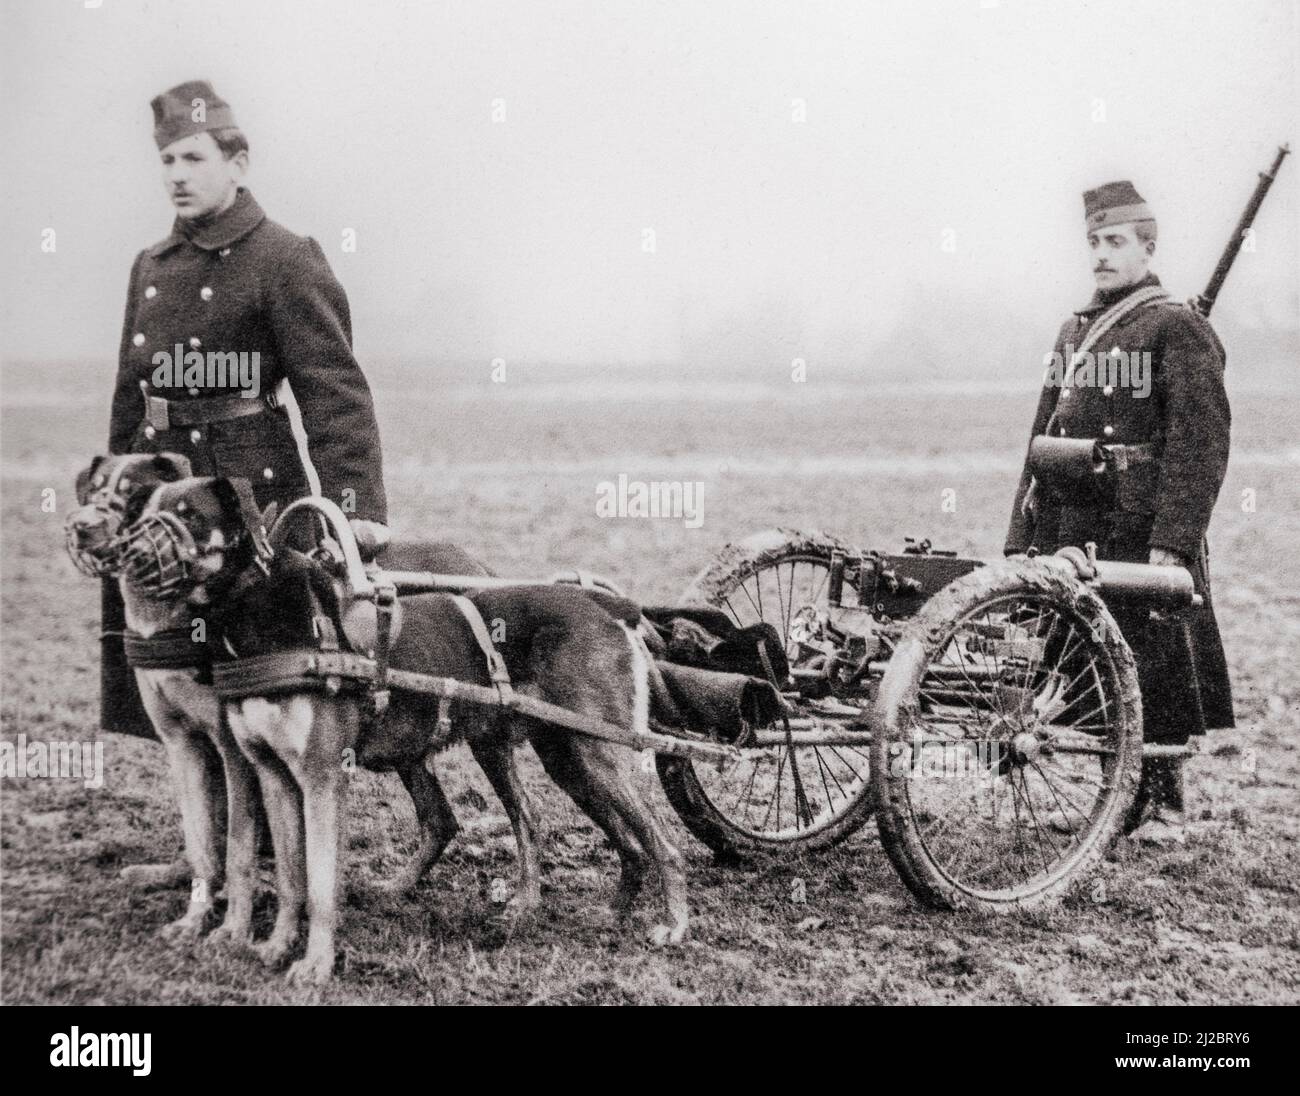 Fotografía antigua que muestra carabineros belgas / infantería ligera de la Primera Guerra Mundial con ametralladora Maxim tirada por perros mastín belgas durante la Primera Guerra Mundial en Bélgica Foto de stock